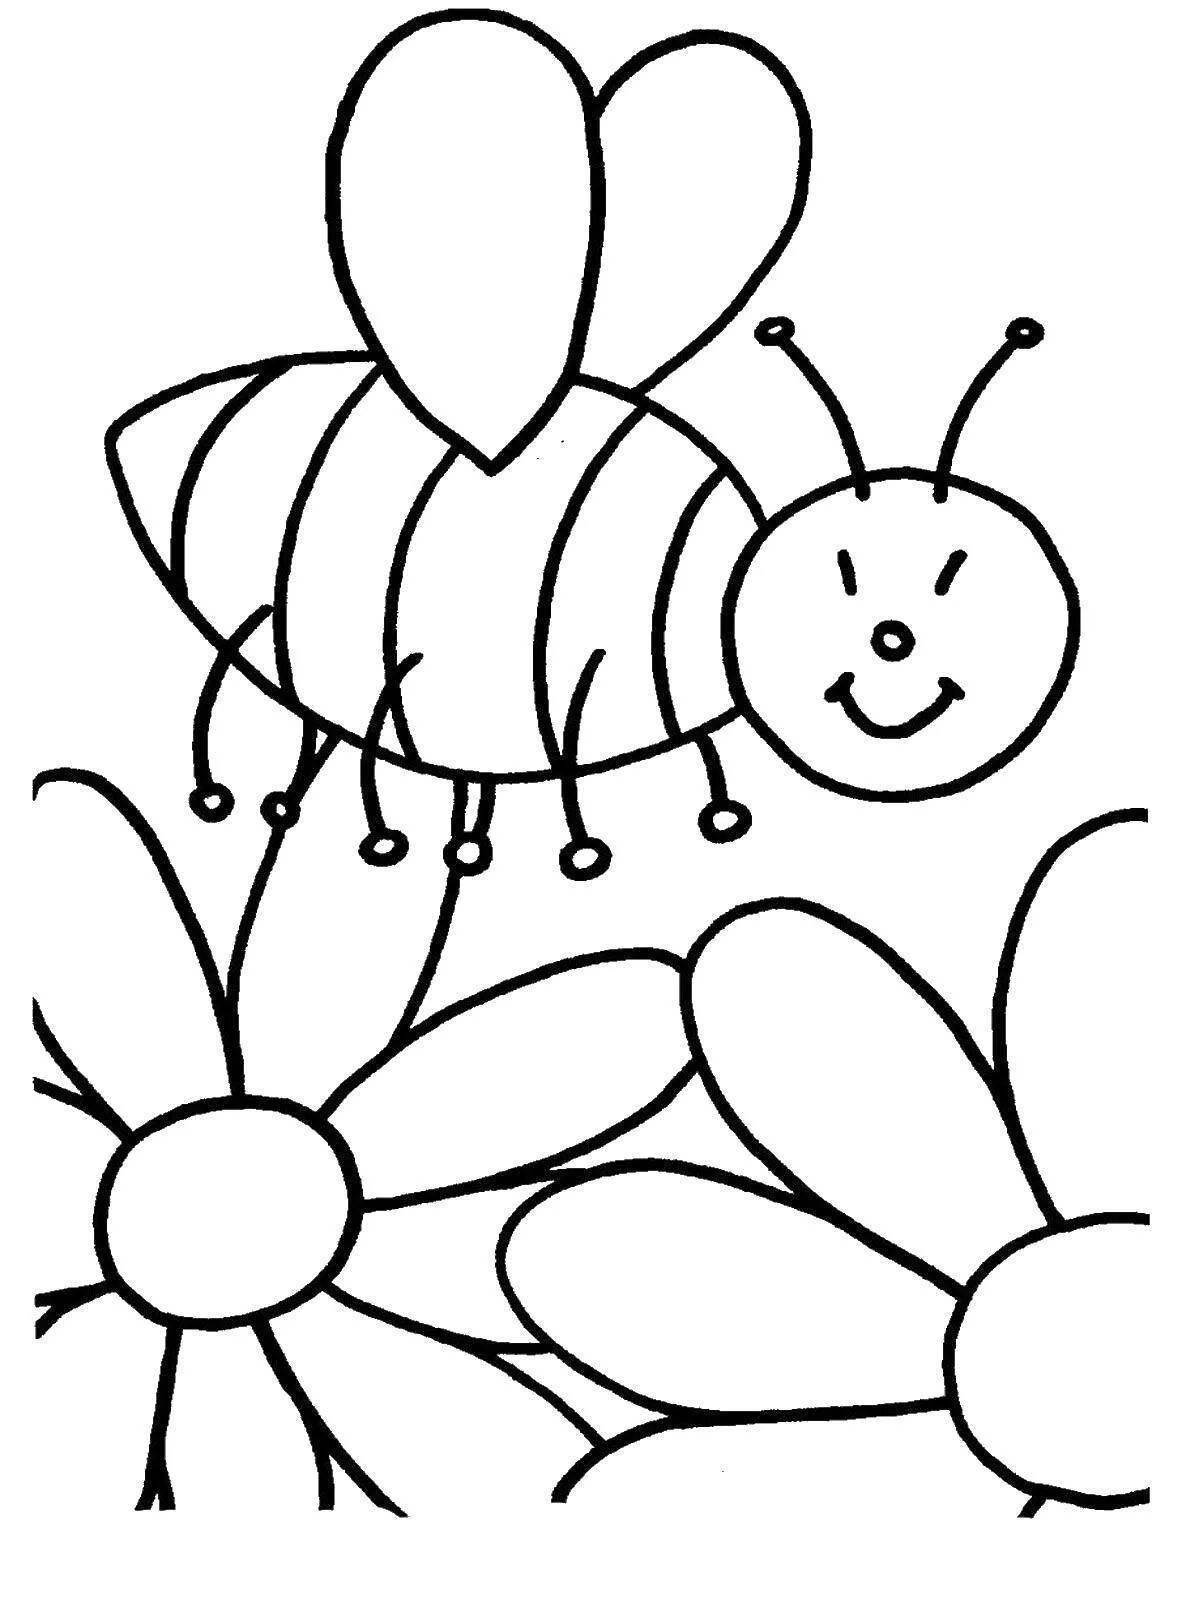 Странная раскраска пчелы для детей 3-4 лет